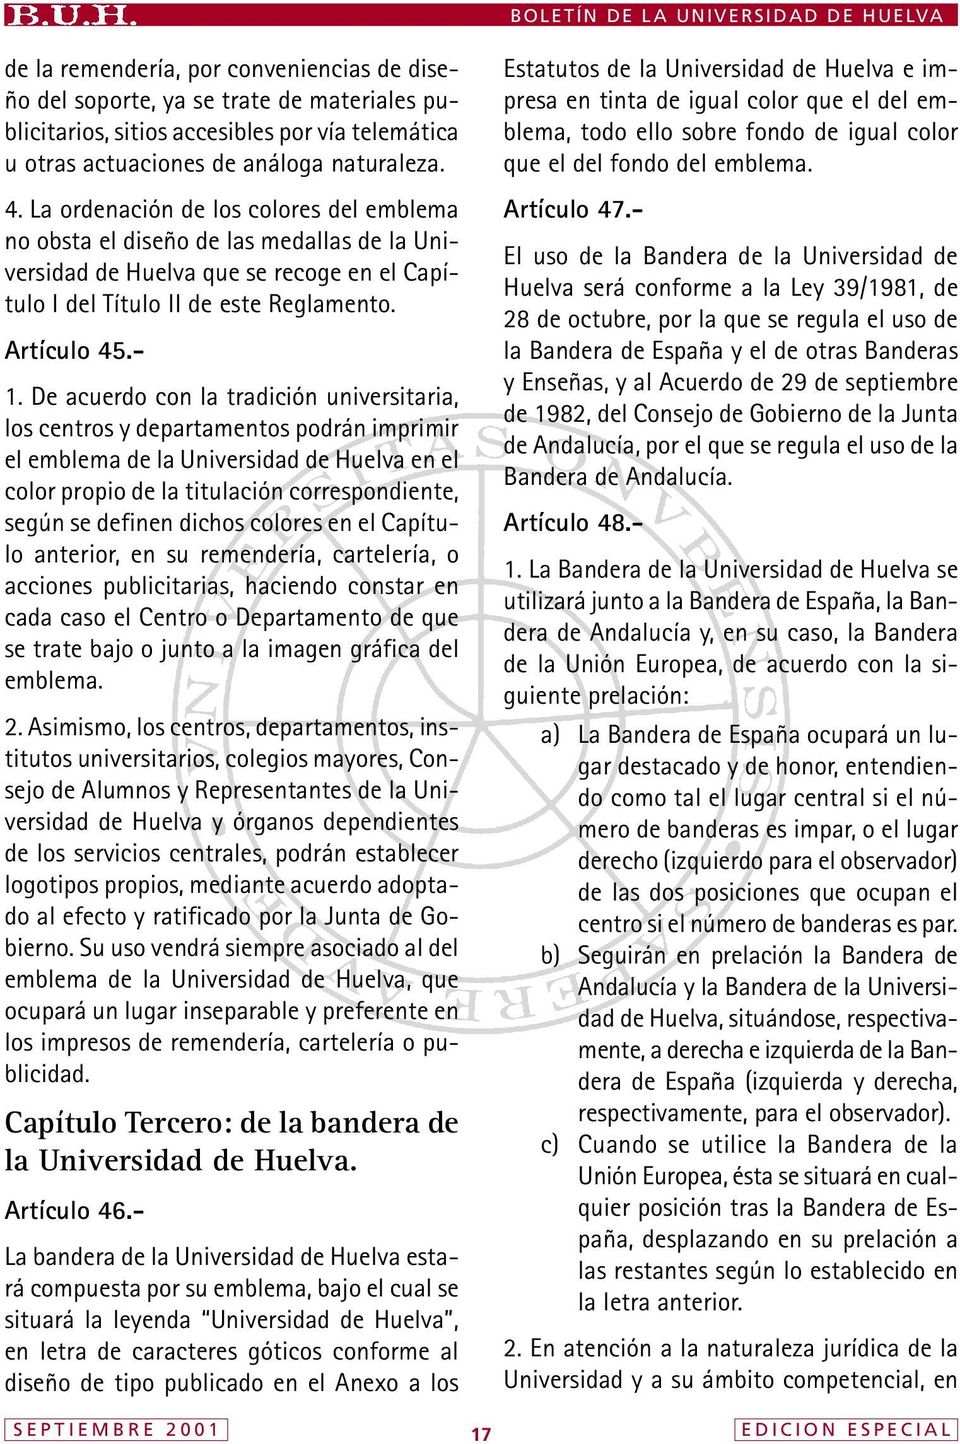 De acuerdo con la tradición universitaria, los centros y departamentos podrán imprimir el emblema de la Universidad de Huelva en el color propio de la titulación correspondiente, según se definen